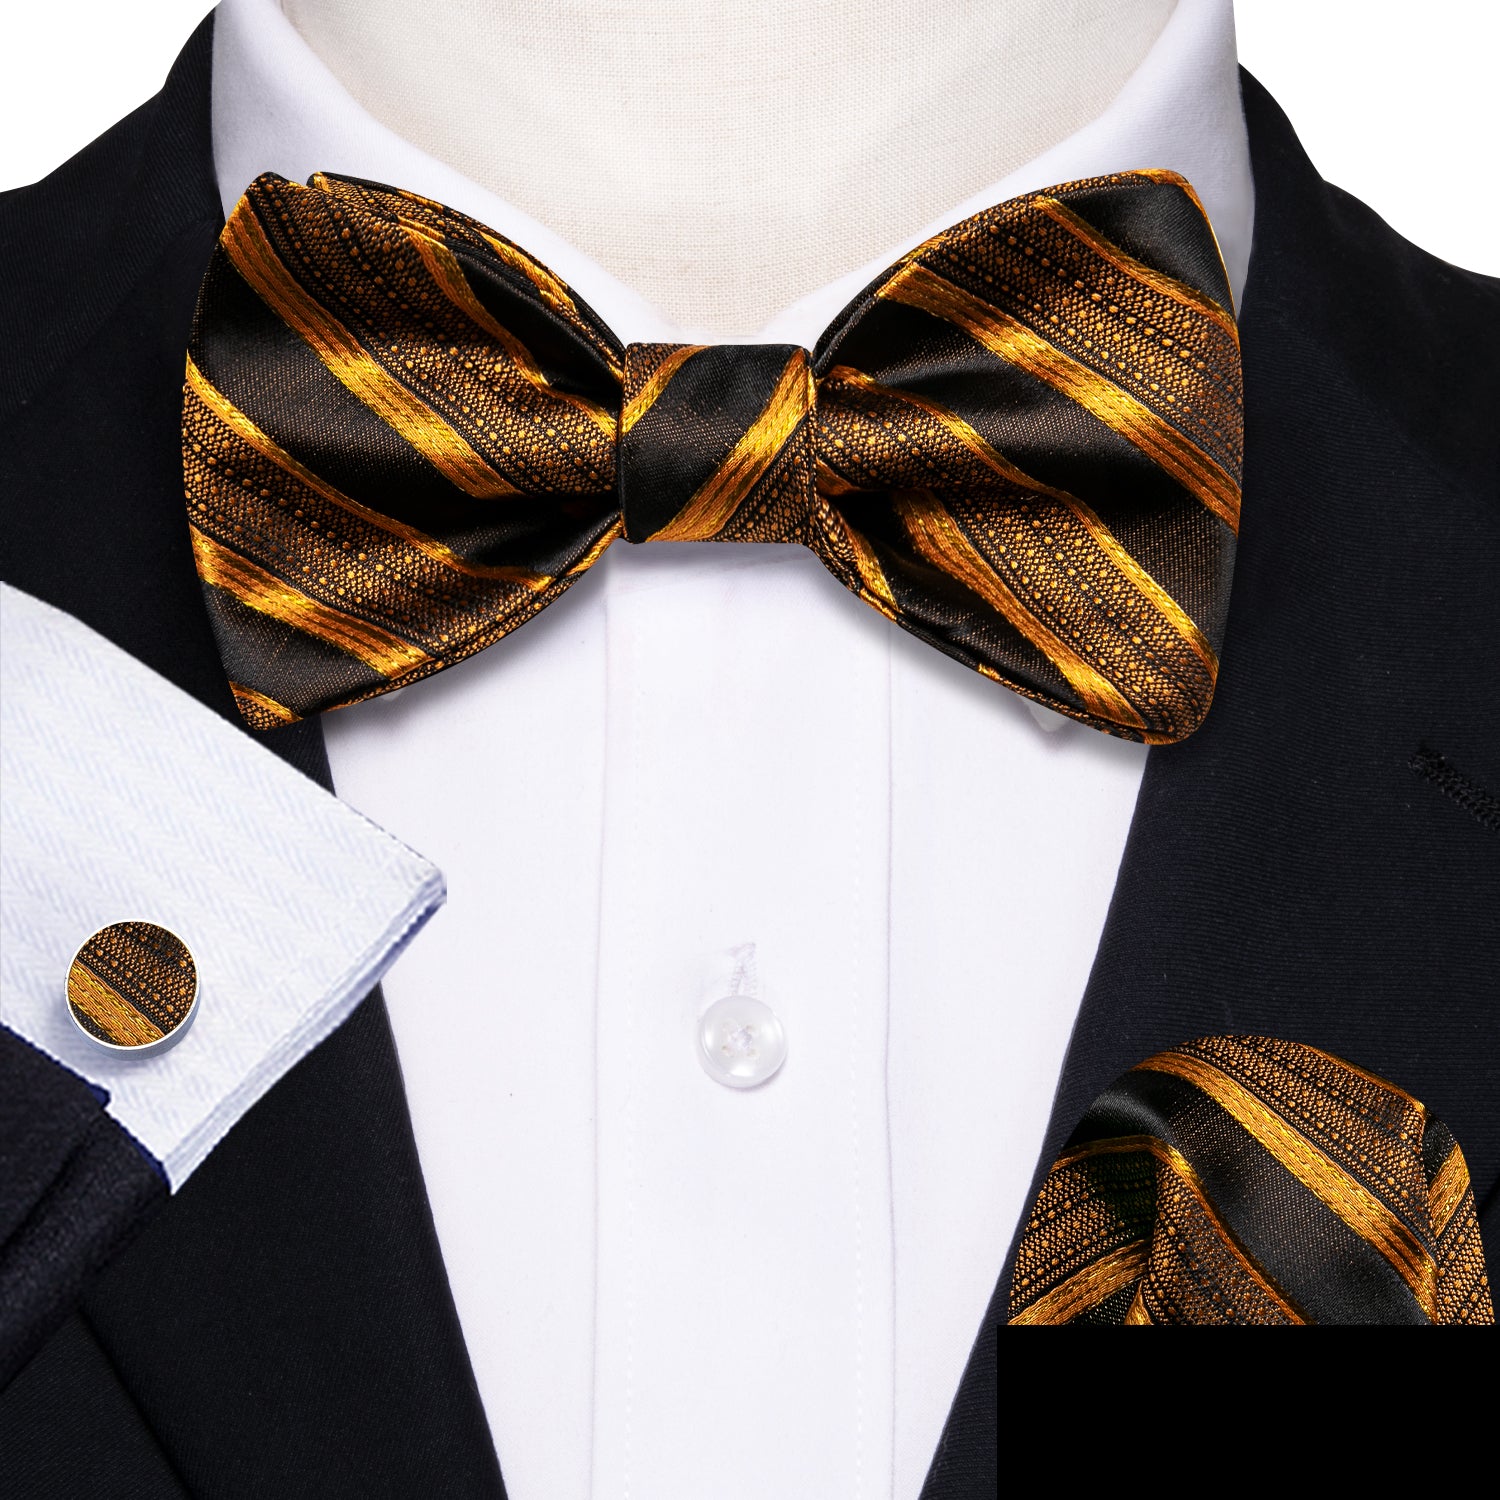 Barry.wang Men's Tie Black Gold Striped Bow Tie Hanky Cufflinks Set